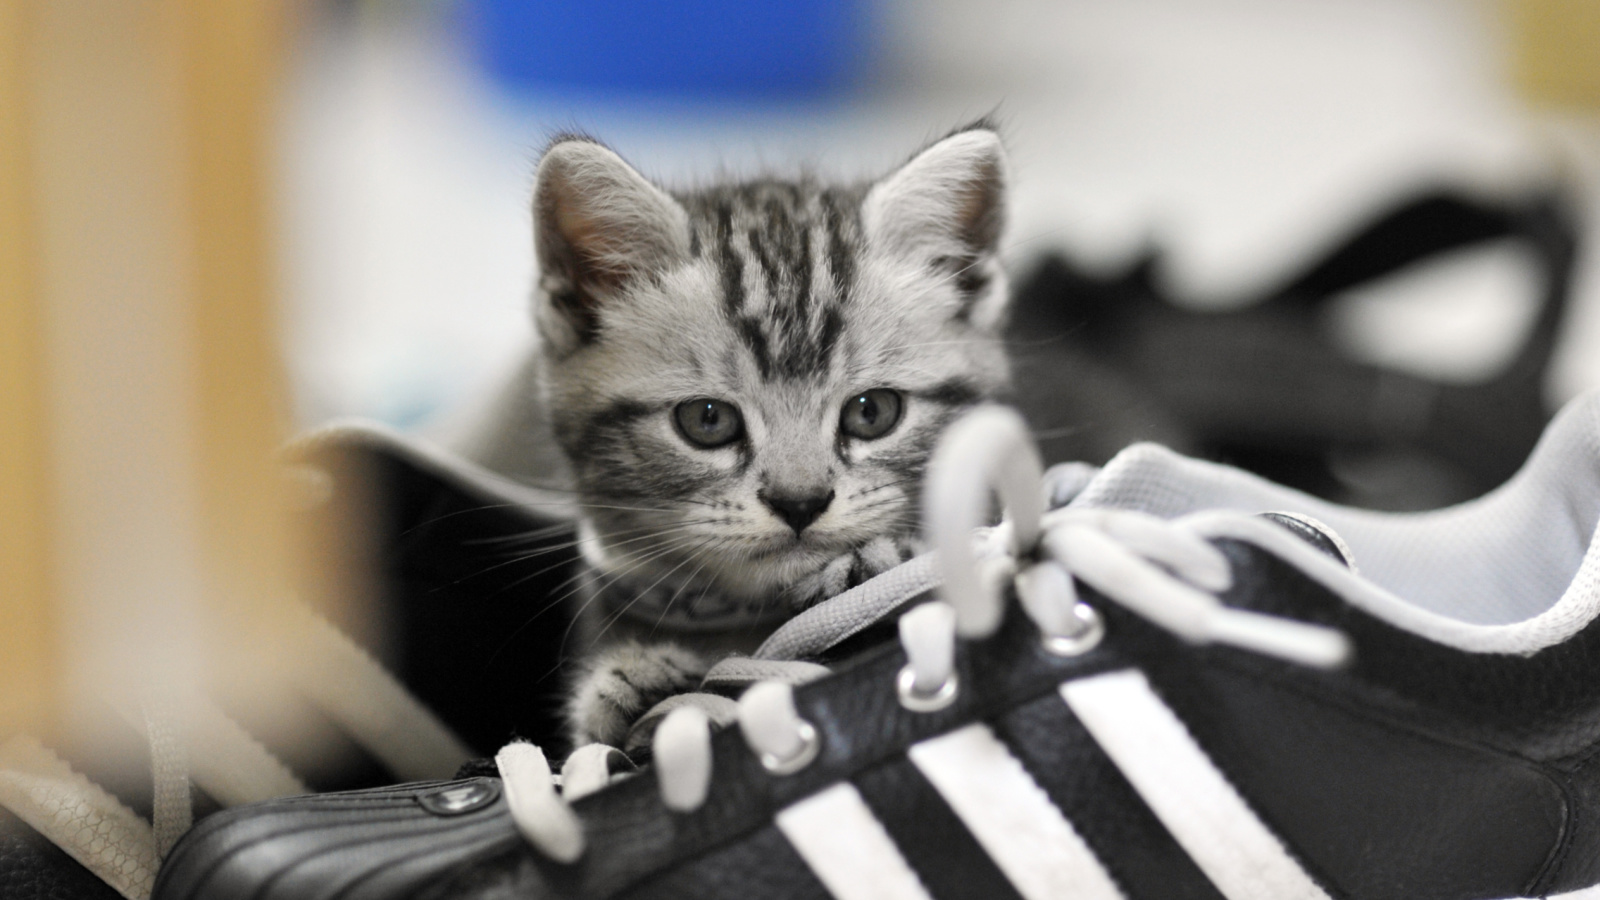 Kitten with shoes screenshot #1 1600x900